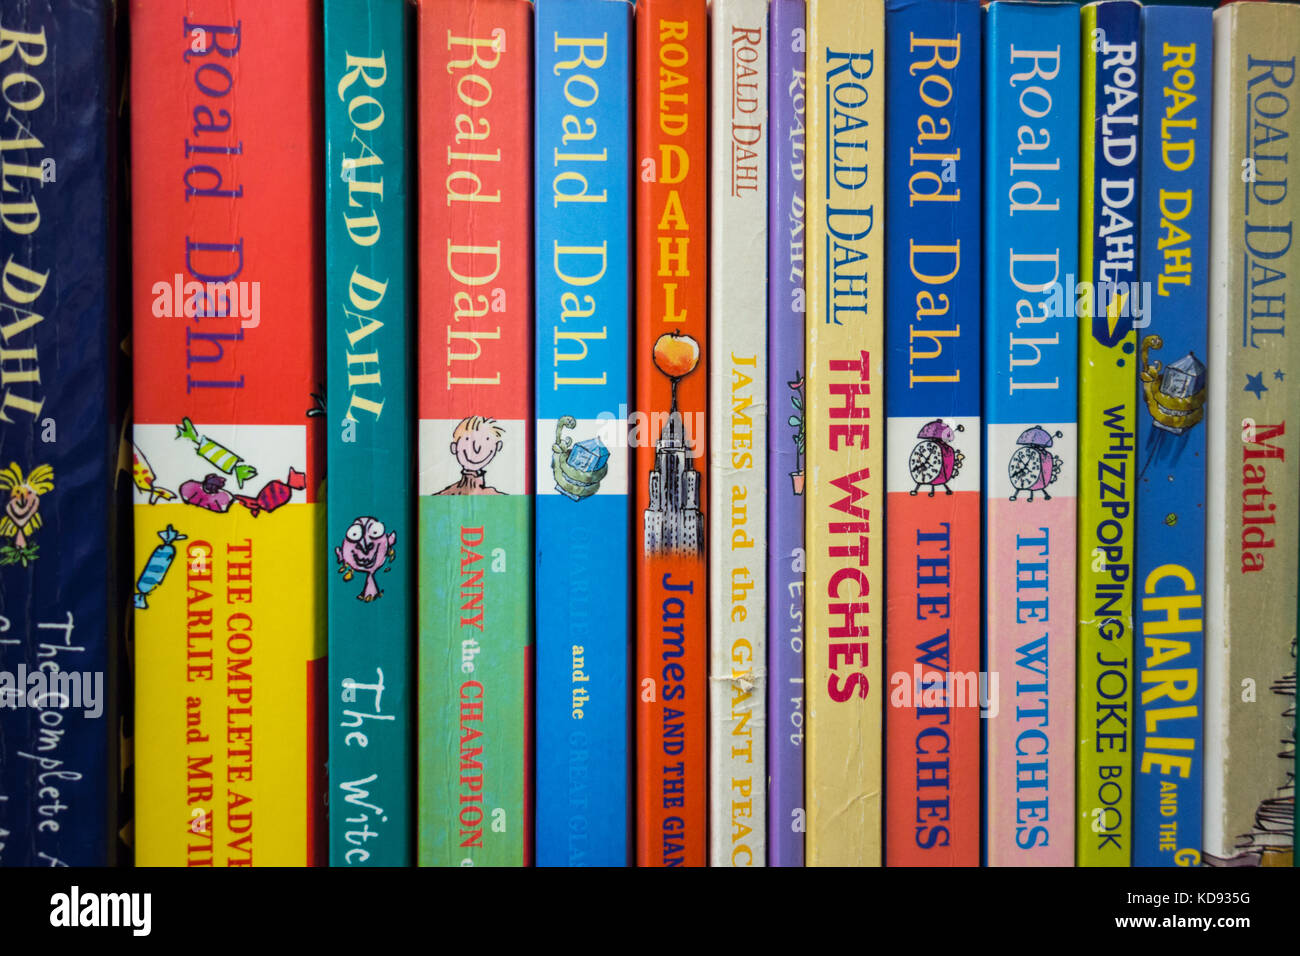 Primer plano de una estantería de coloridas cubiertas y espinas de libros de Roald Dahl Foto de stock